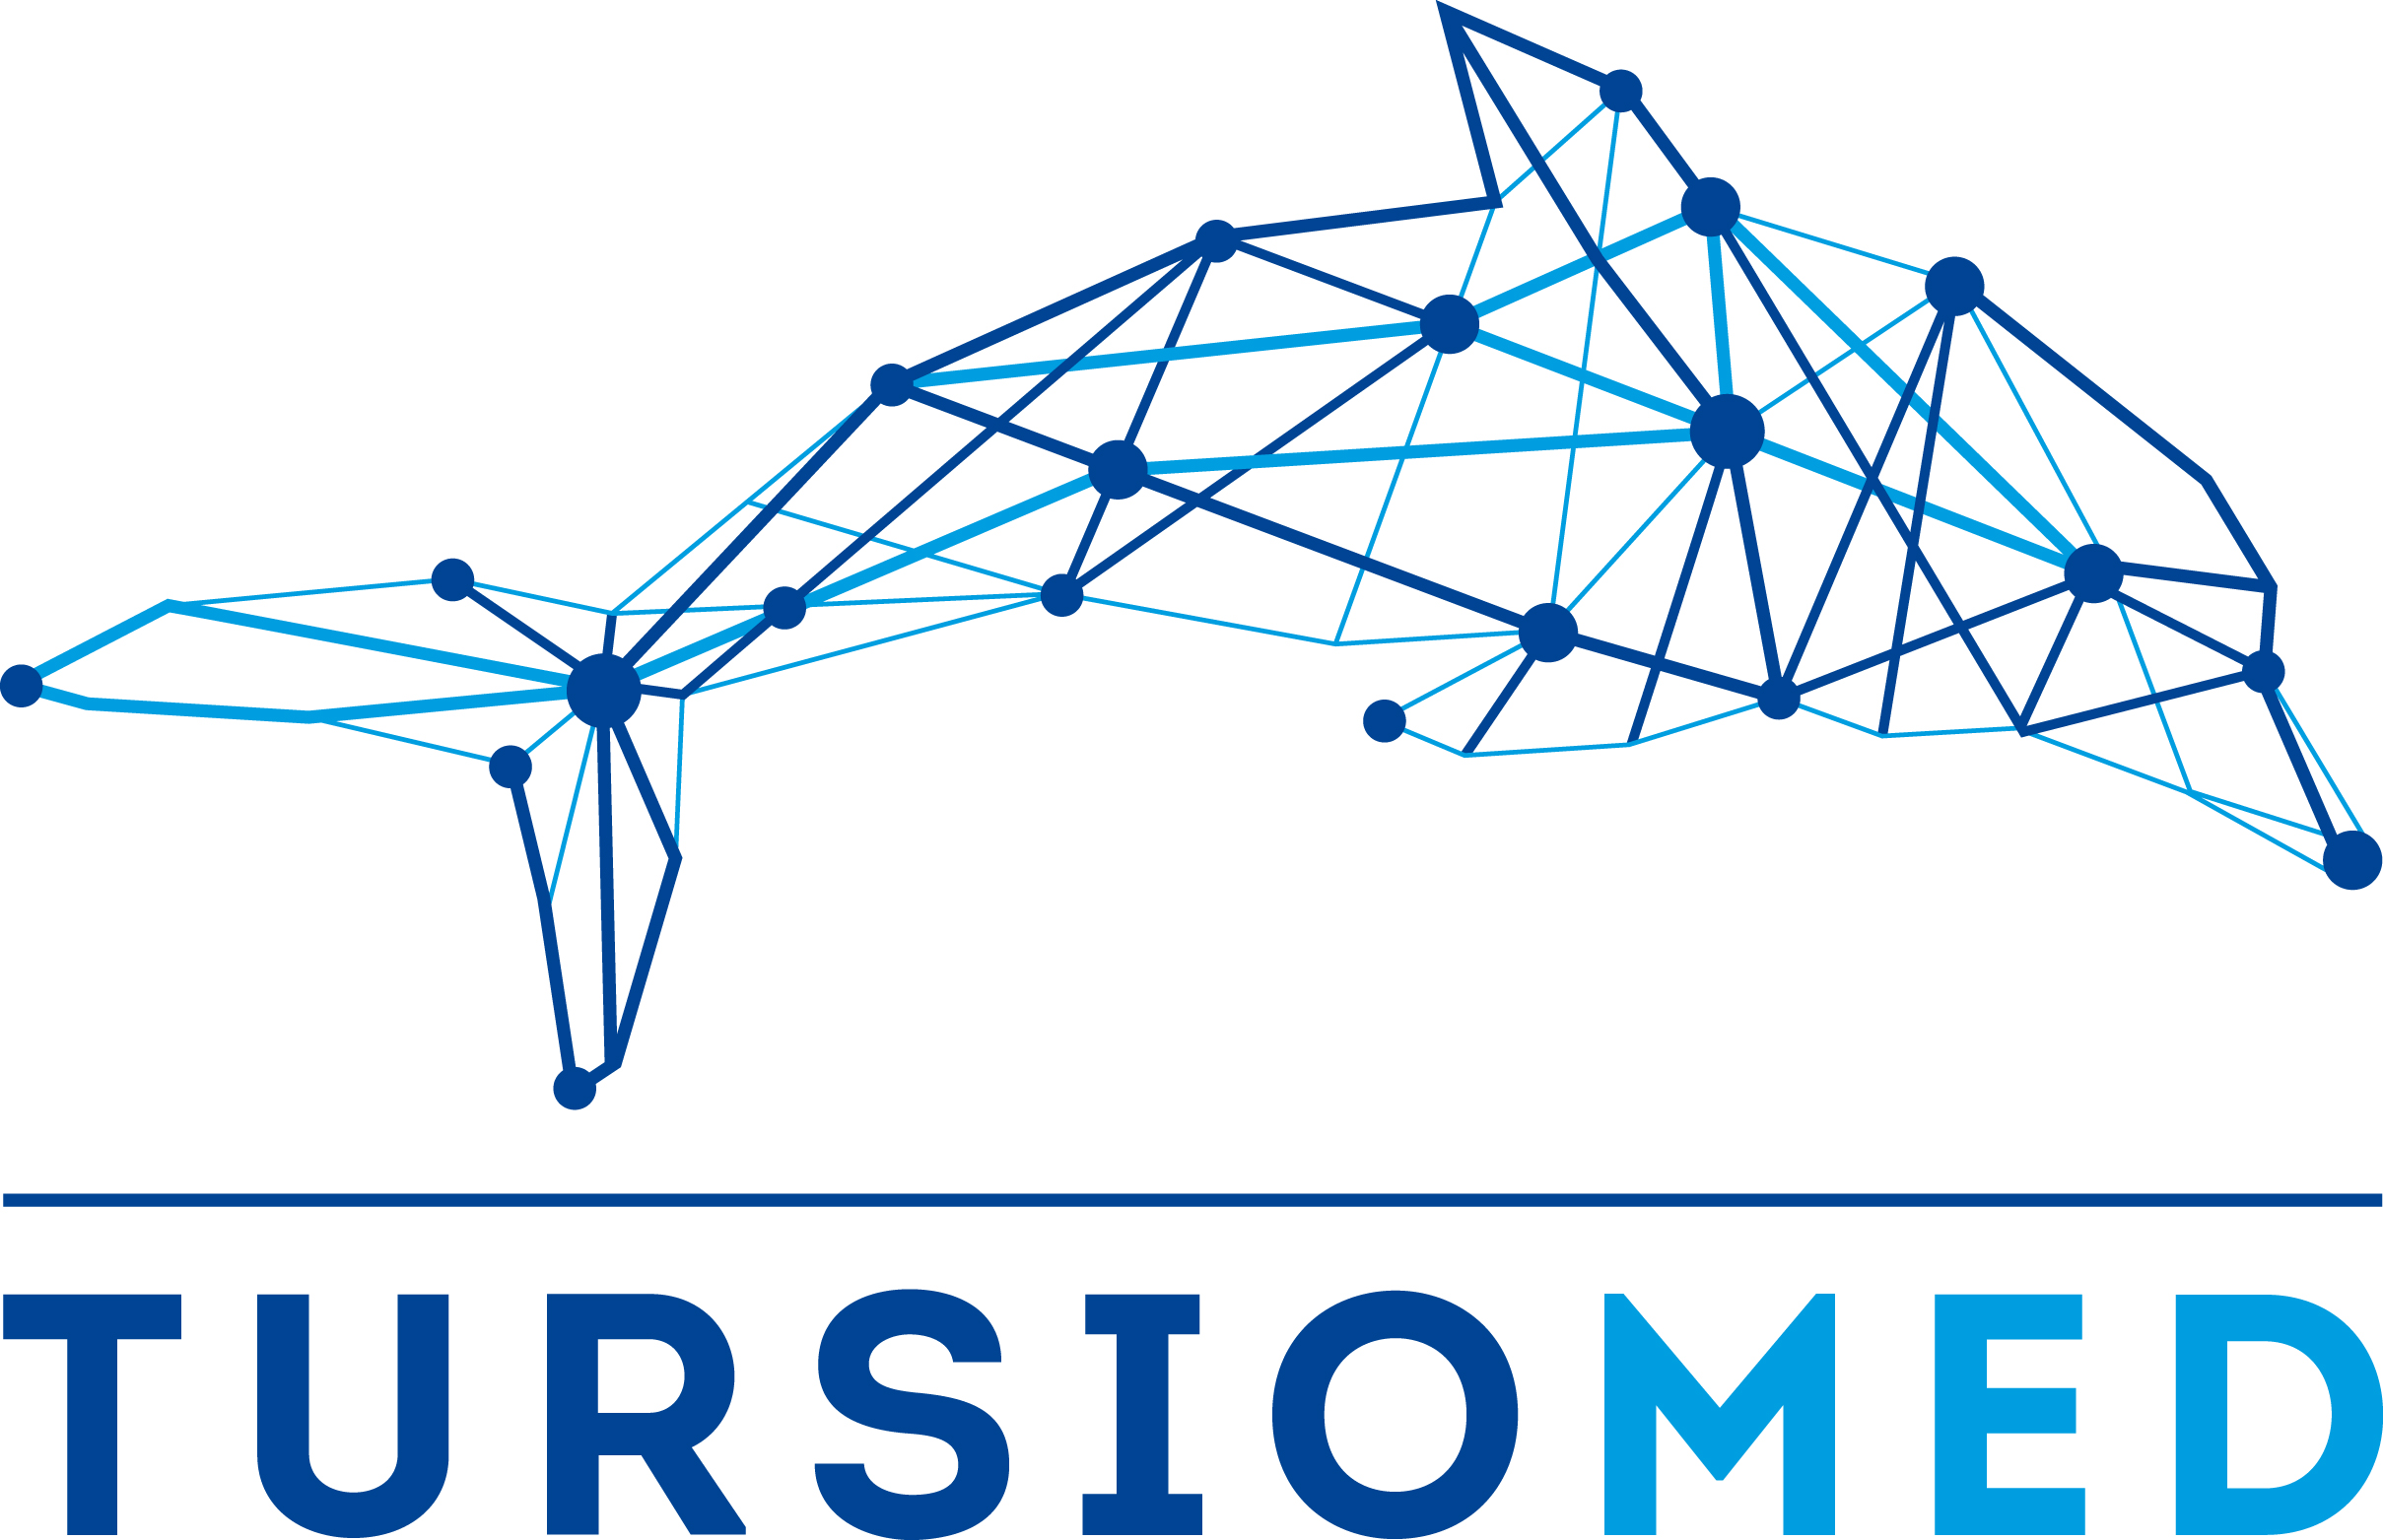 Il progetto TursioMed (2017 - 2019)